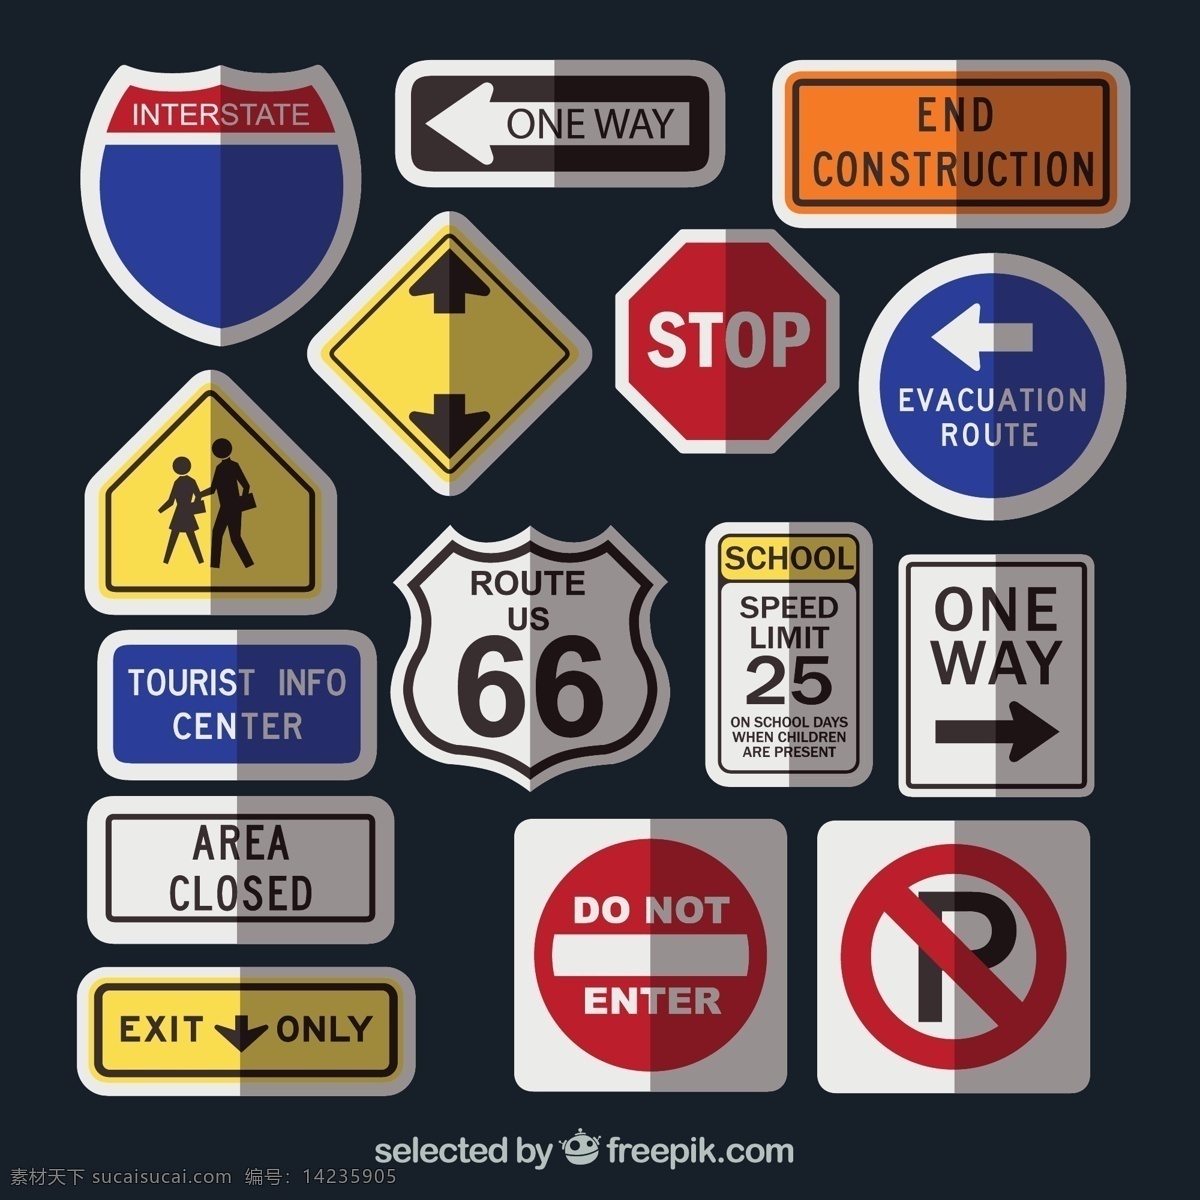 道路交通 标志牌 矢量图 行人警示牌 停止 停车牌 出口 限速牌 交通标志 66号公路 指示牌